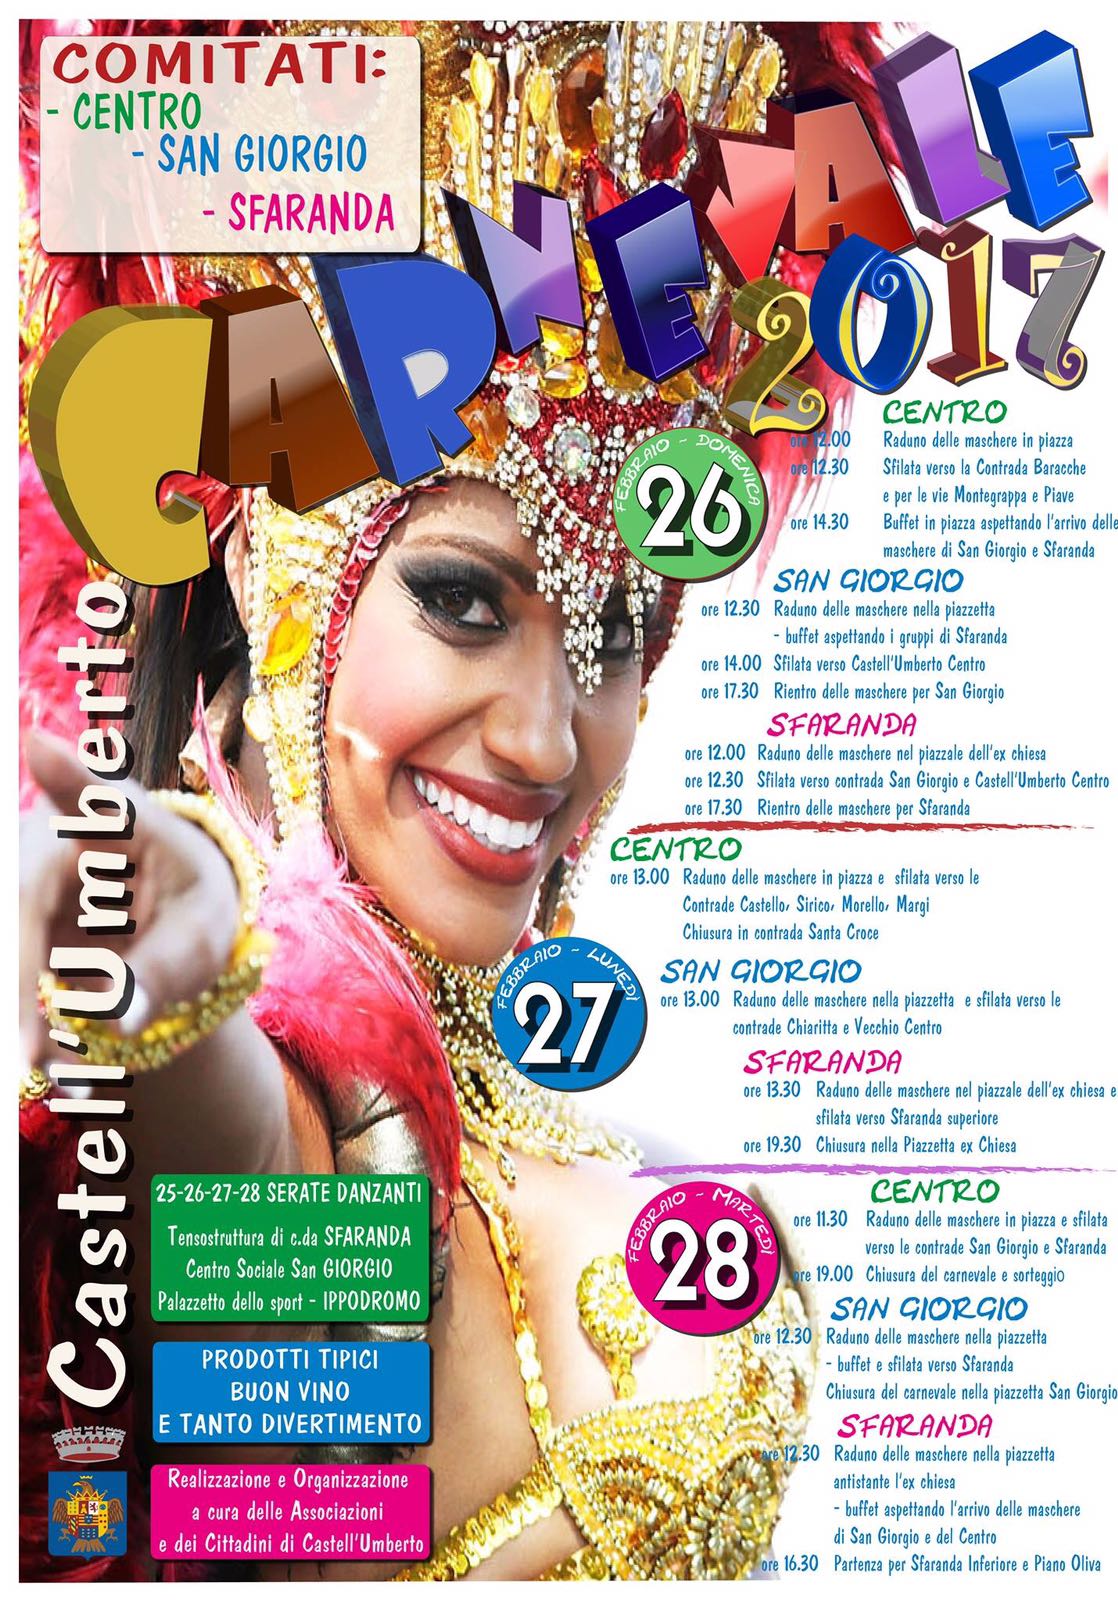 Castell’Umberto – Al via il Carnevale 2017 tra divertimento, allegria e tradizioni